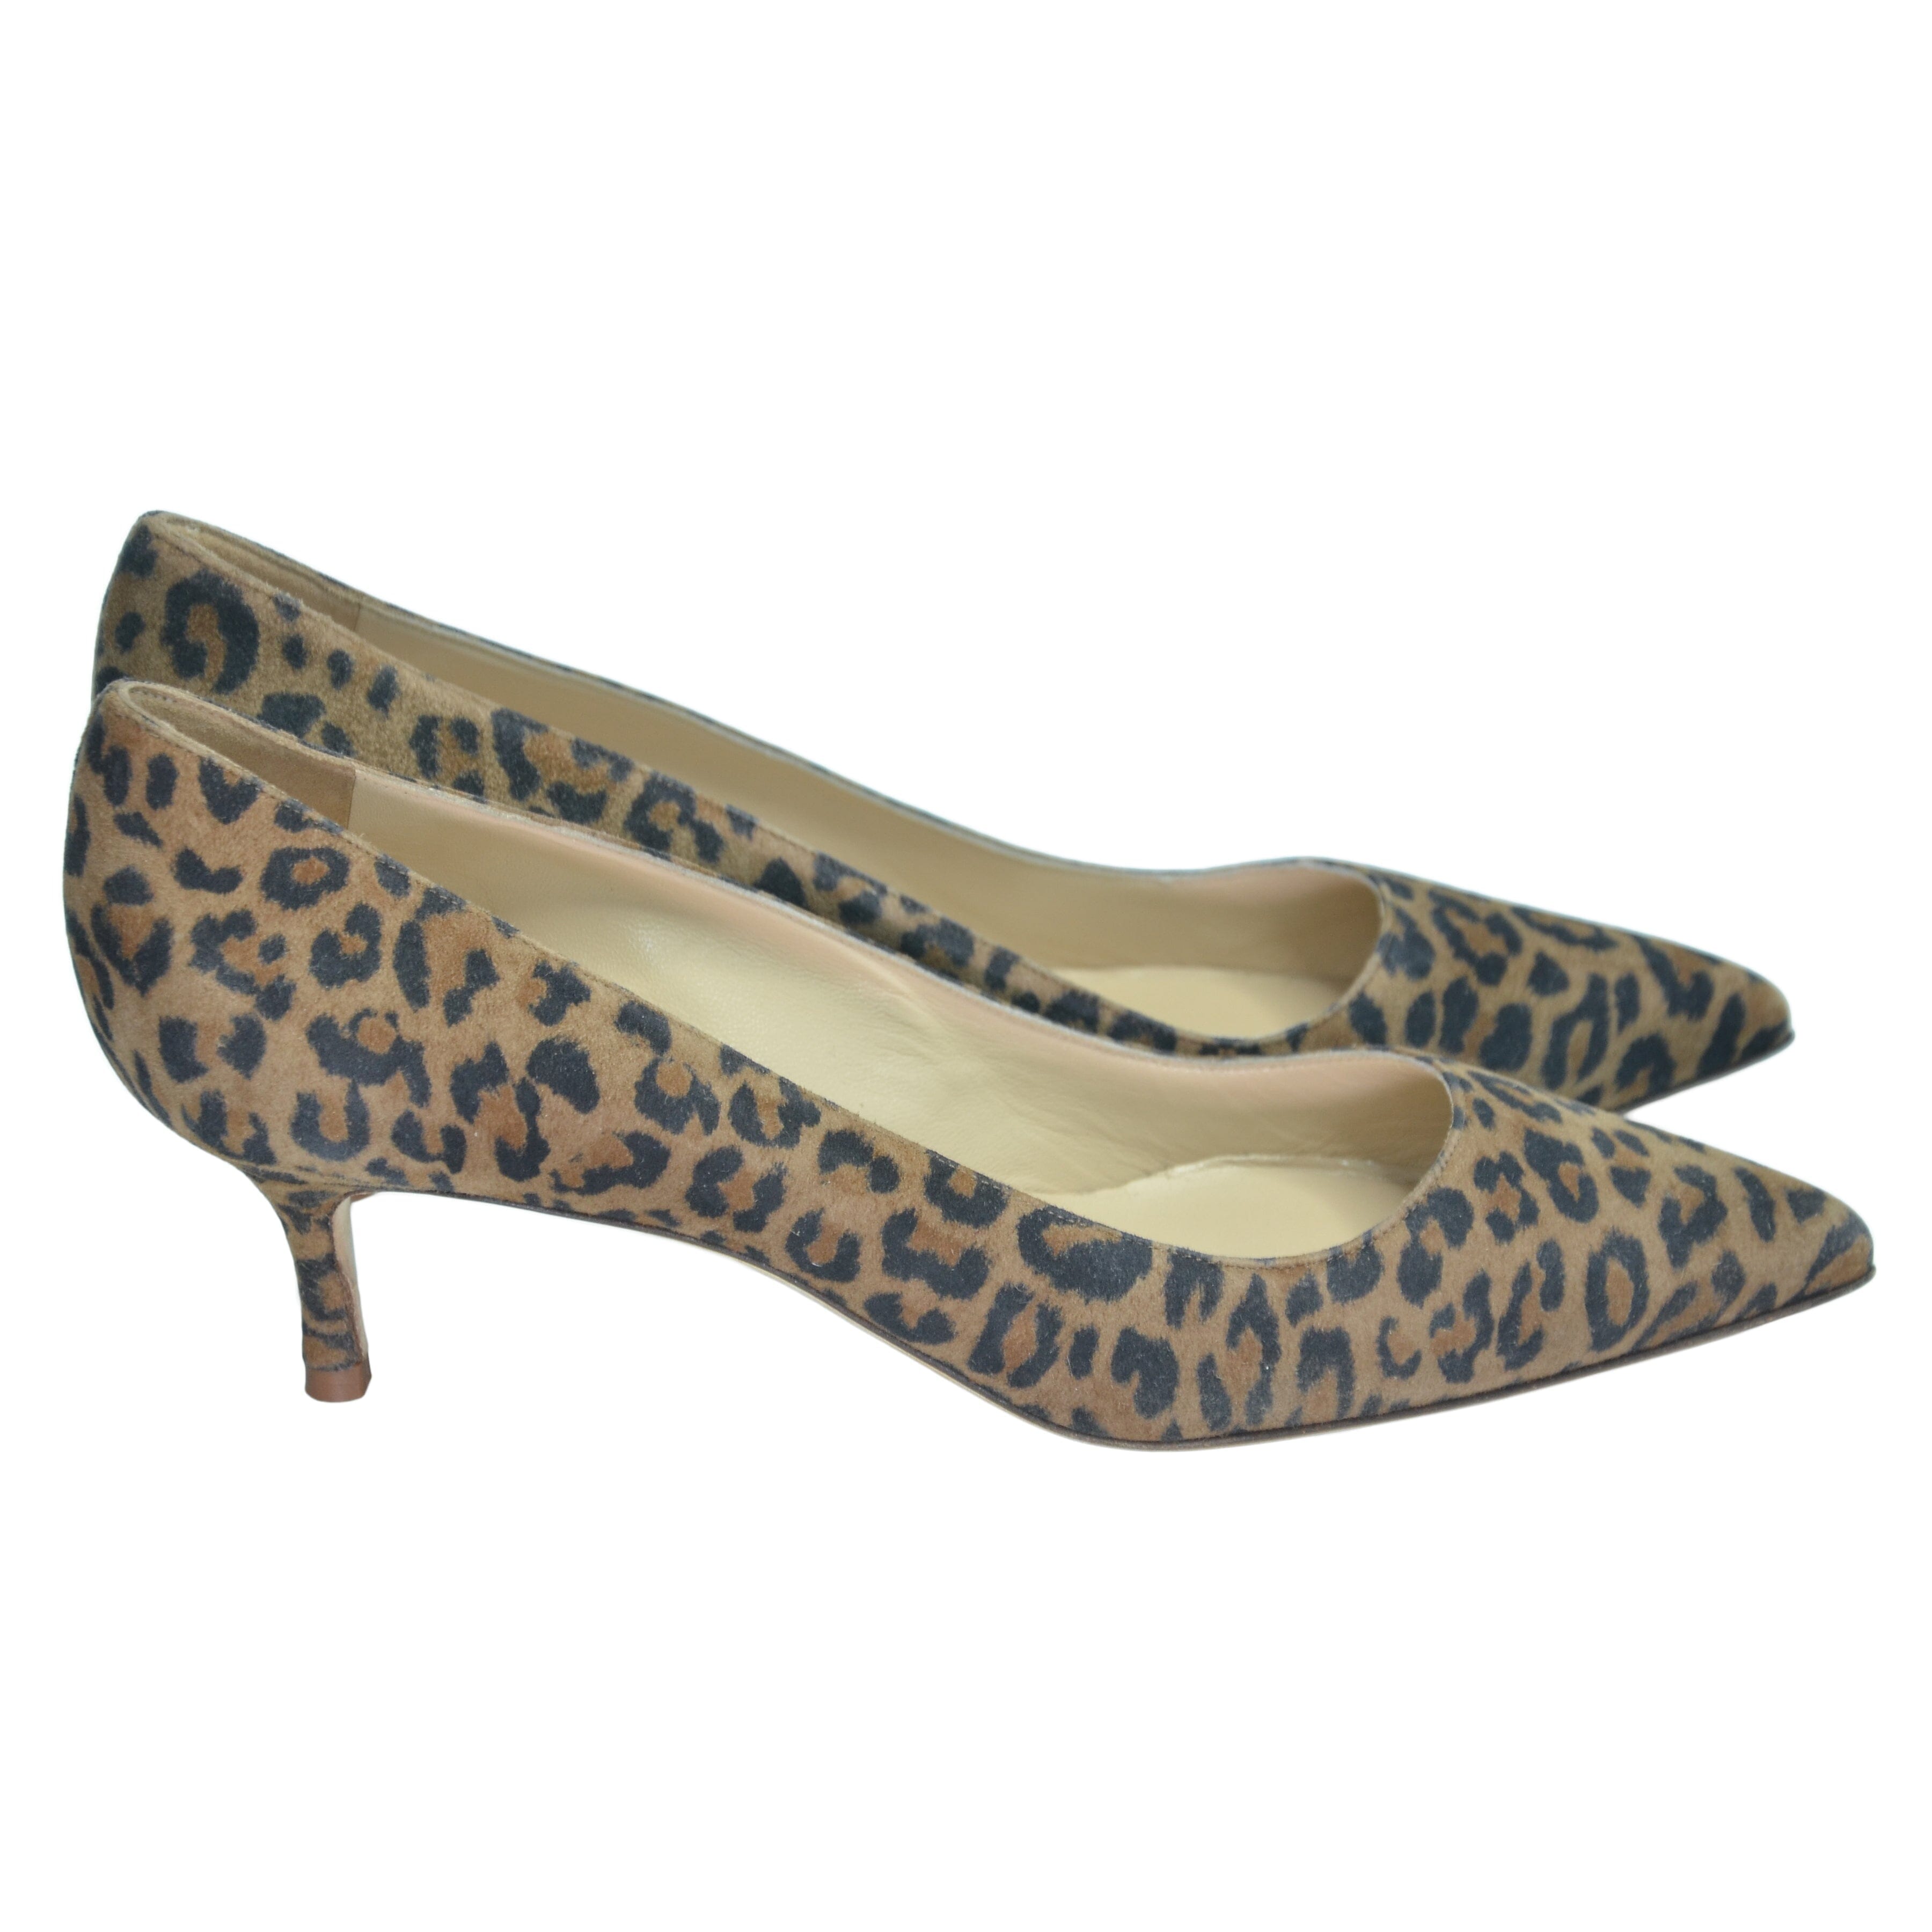 Brown Leopard Print Kitten Heel Pumps Shoes Manolo Blahnik